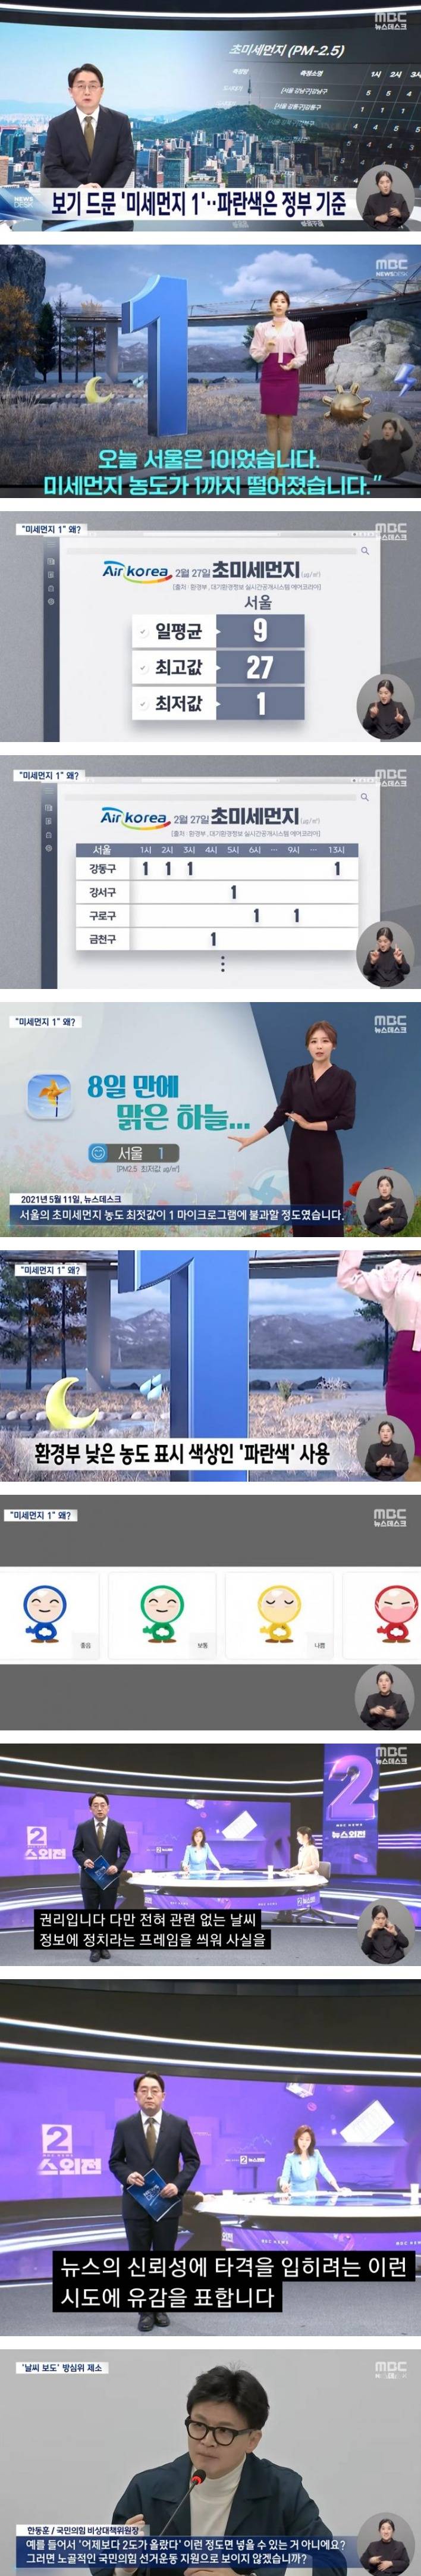 날씨 예보 논란 반박하는 MBC